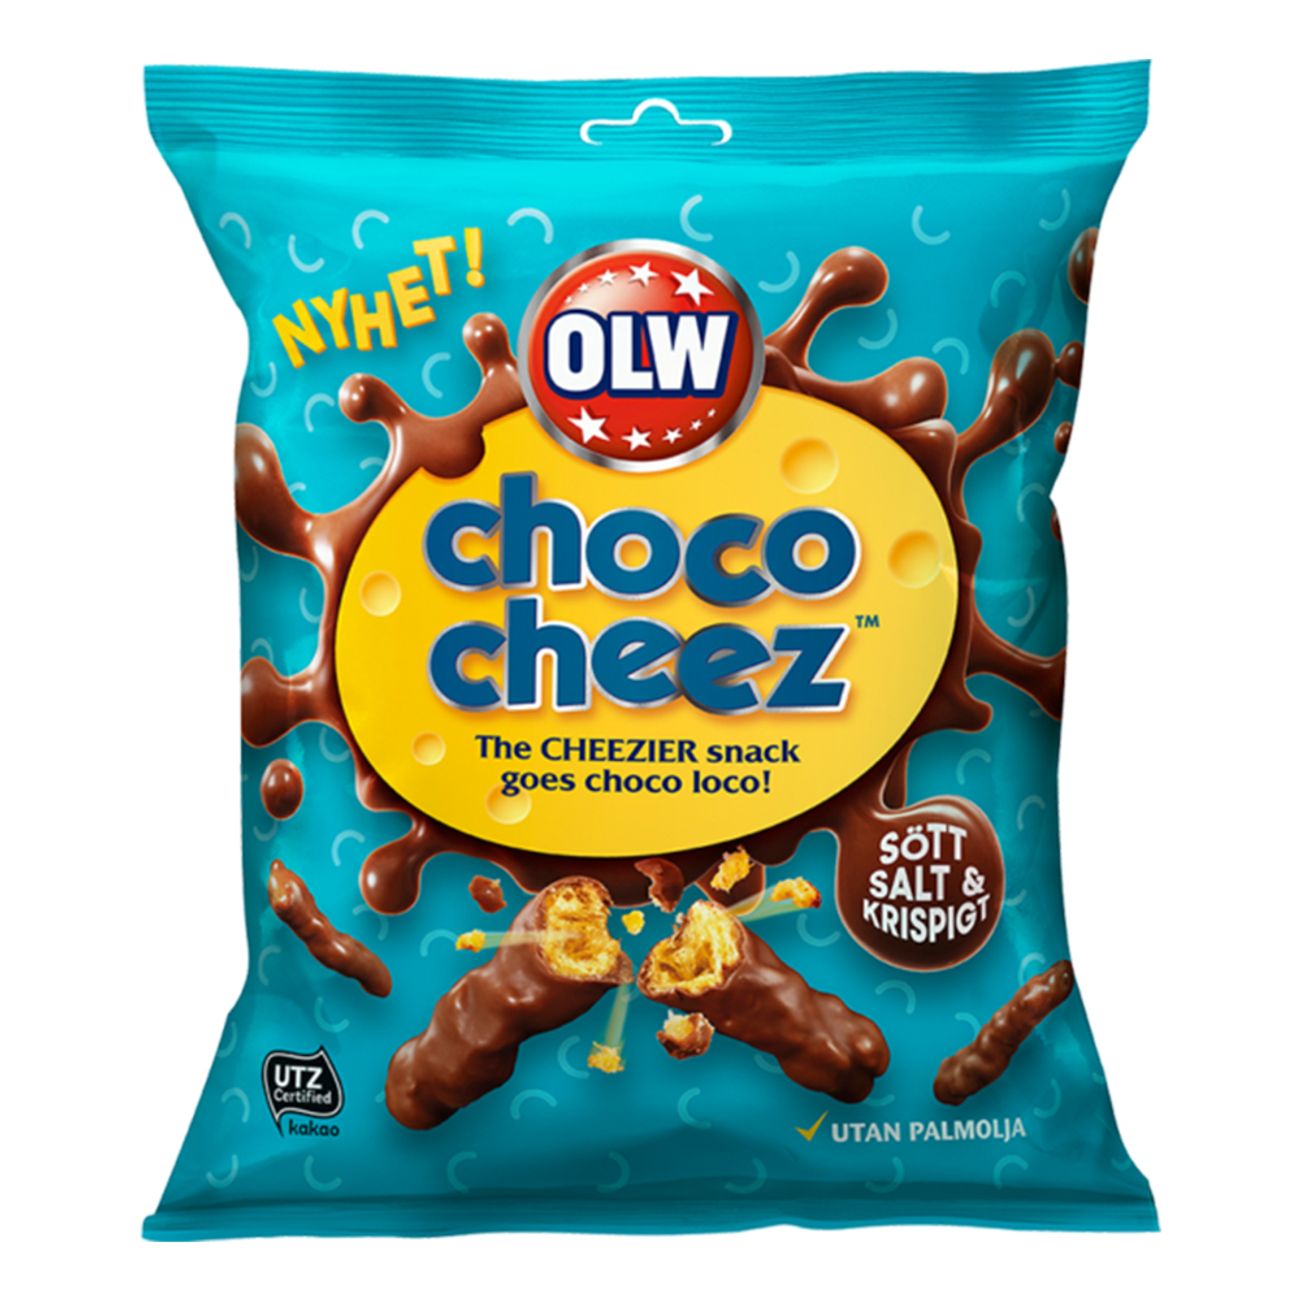 olw-choco-cheez-1